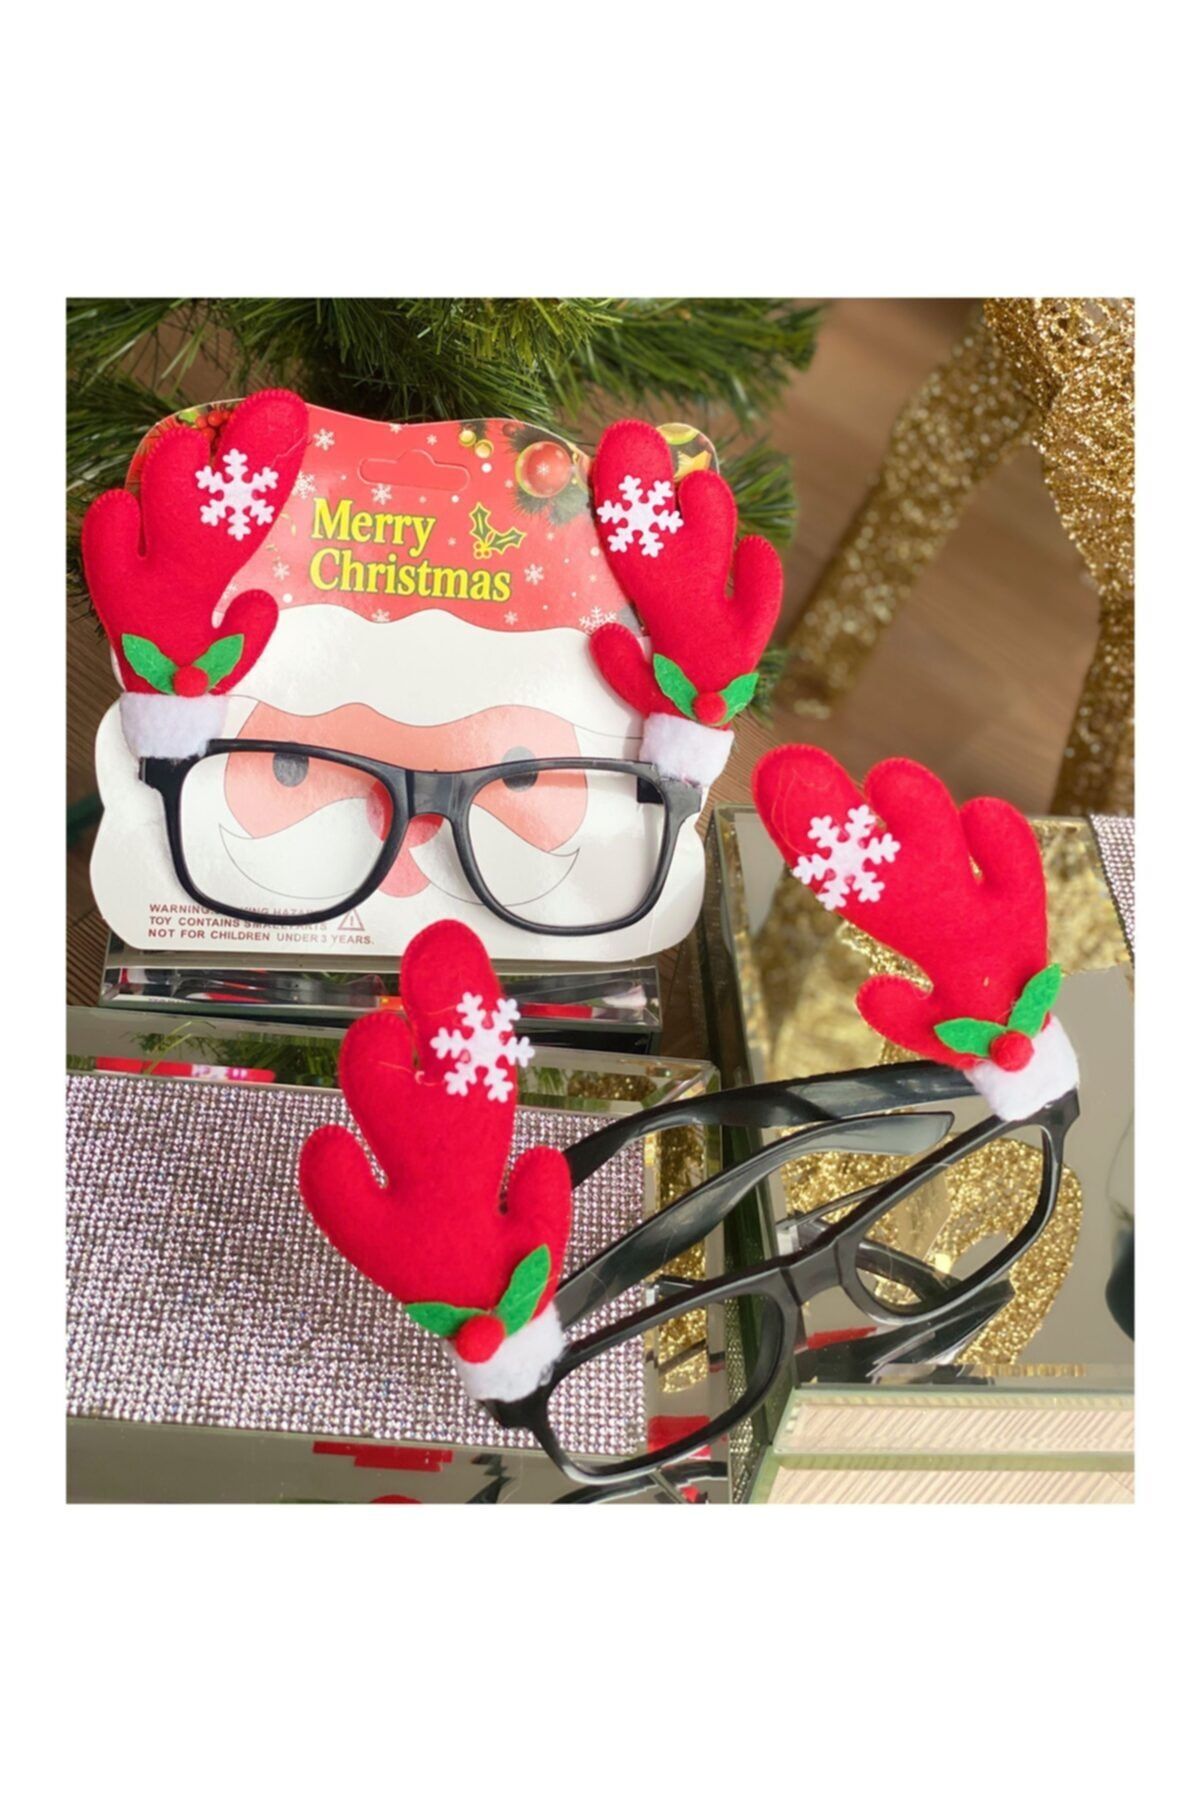 QUEEN AKSESUAR Yeni Yıl Yılbaşı Özel Lüks Geyik Boynuzlu Süslü Gözlük Noel Gözlüğü